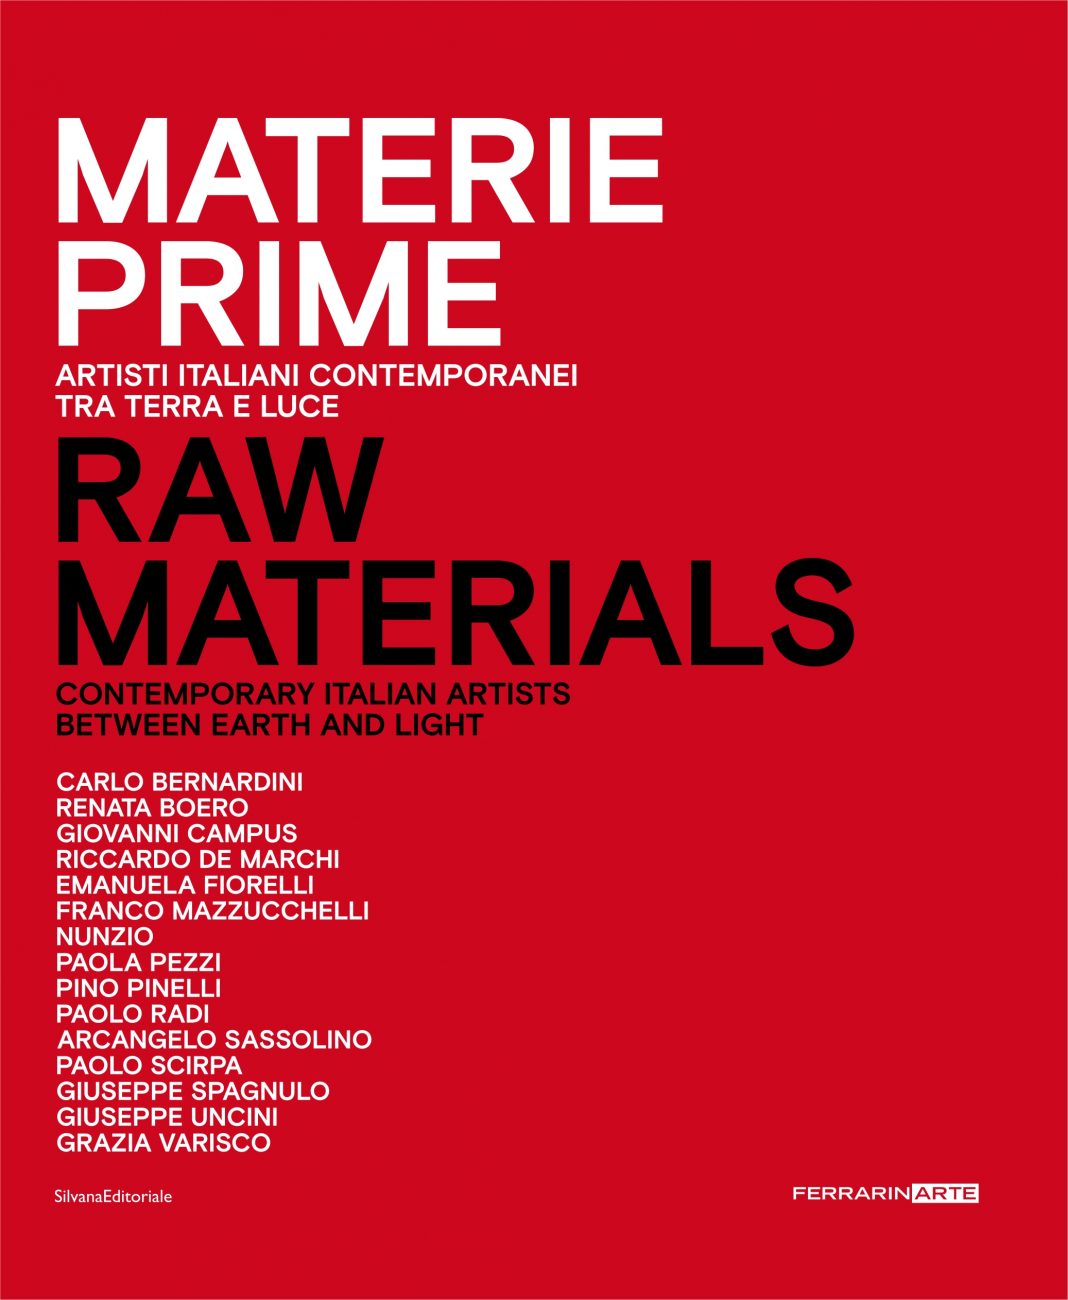 Materie prime – Artisti italiani contemporanei tra terra e luce. Presentazione del catalogohttps://www.exibart.com/repository/media/formidable/11/Copertina_materie_prime-1068x1300.jpg